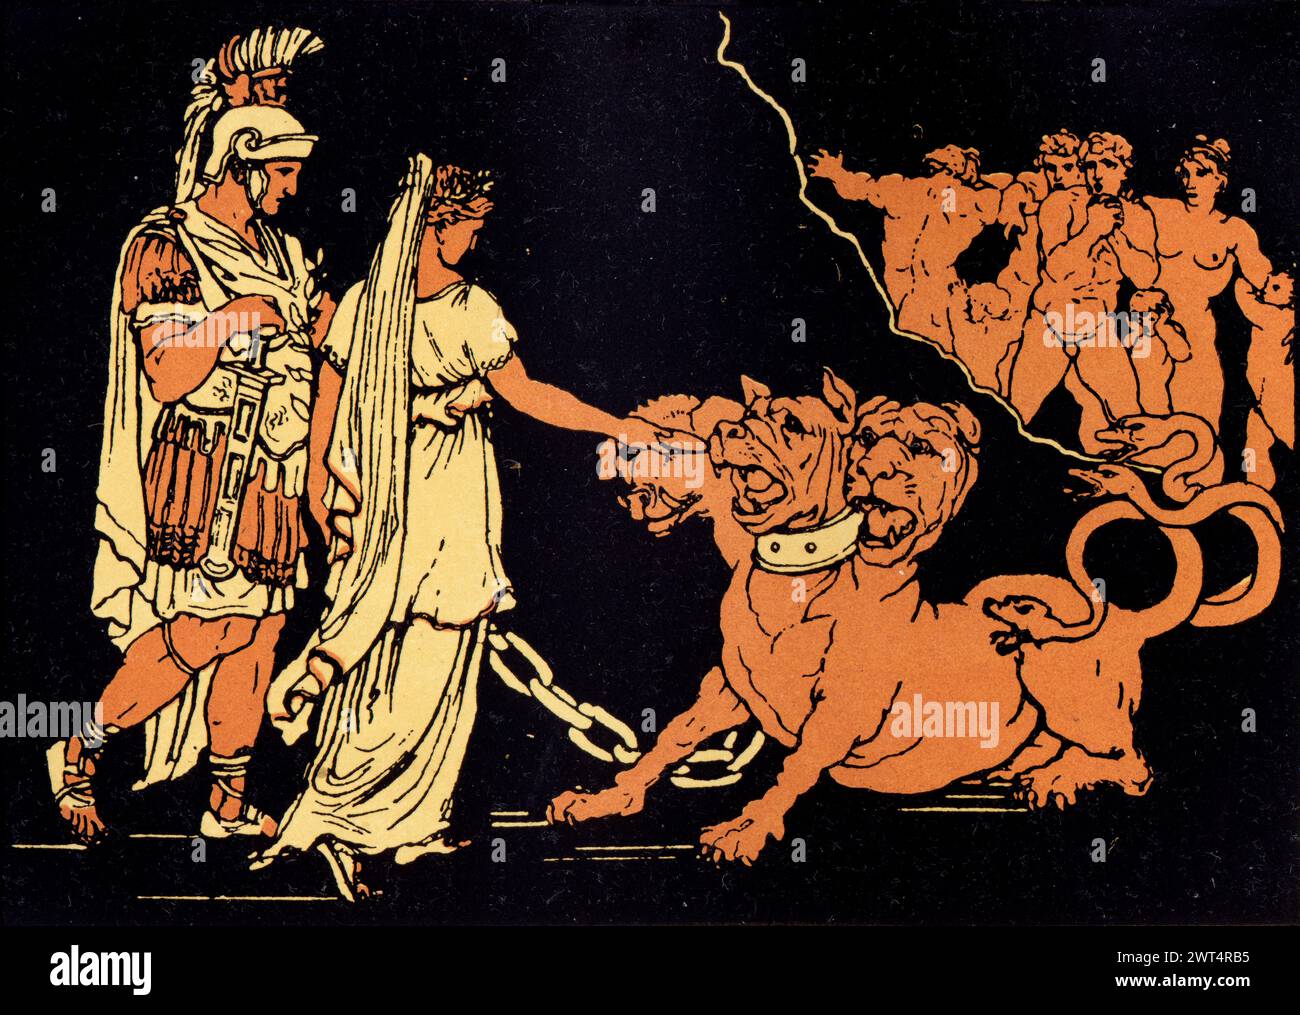 Illustration vintage mythologie romaine, Cerbère, le chien de Hadès, Énée un poème épique latin qui raconte l'histoire légendaire d'Énée, un cheval de Troie qui fl Banque D'Images